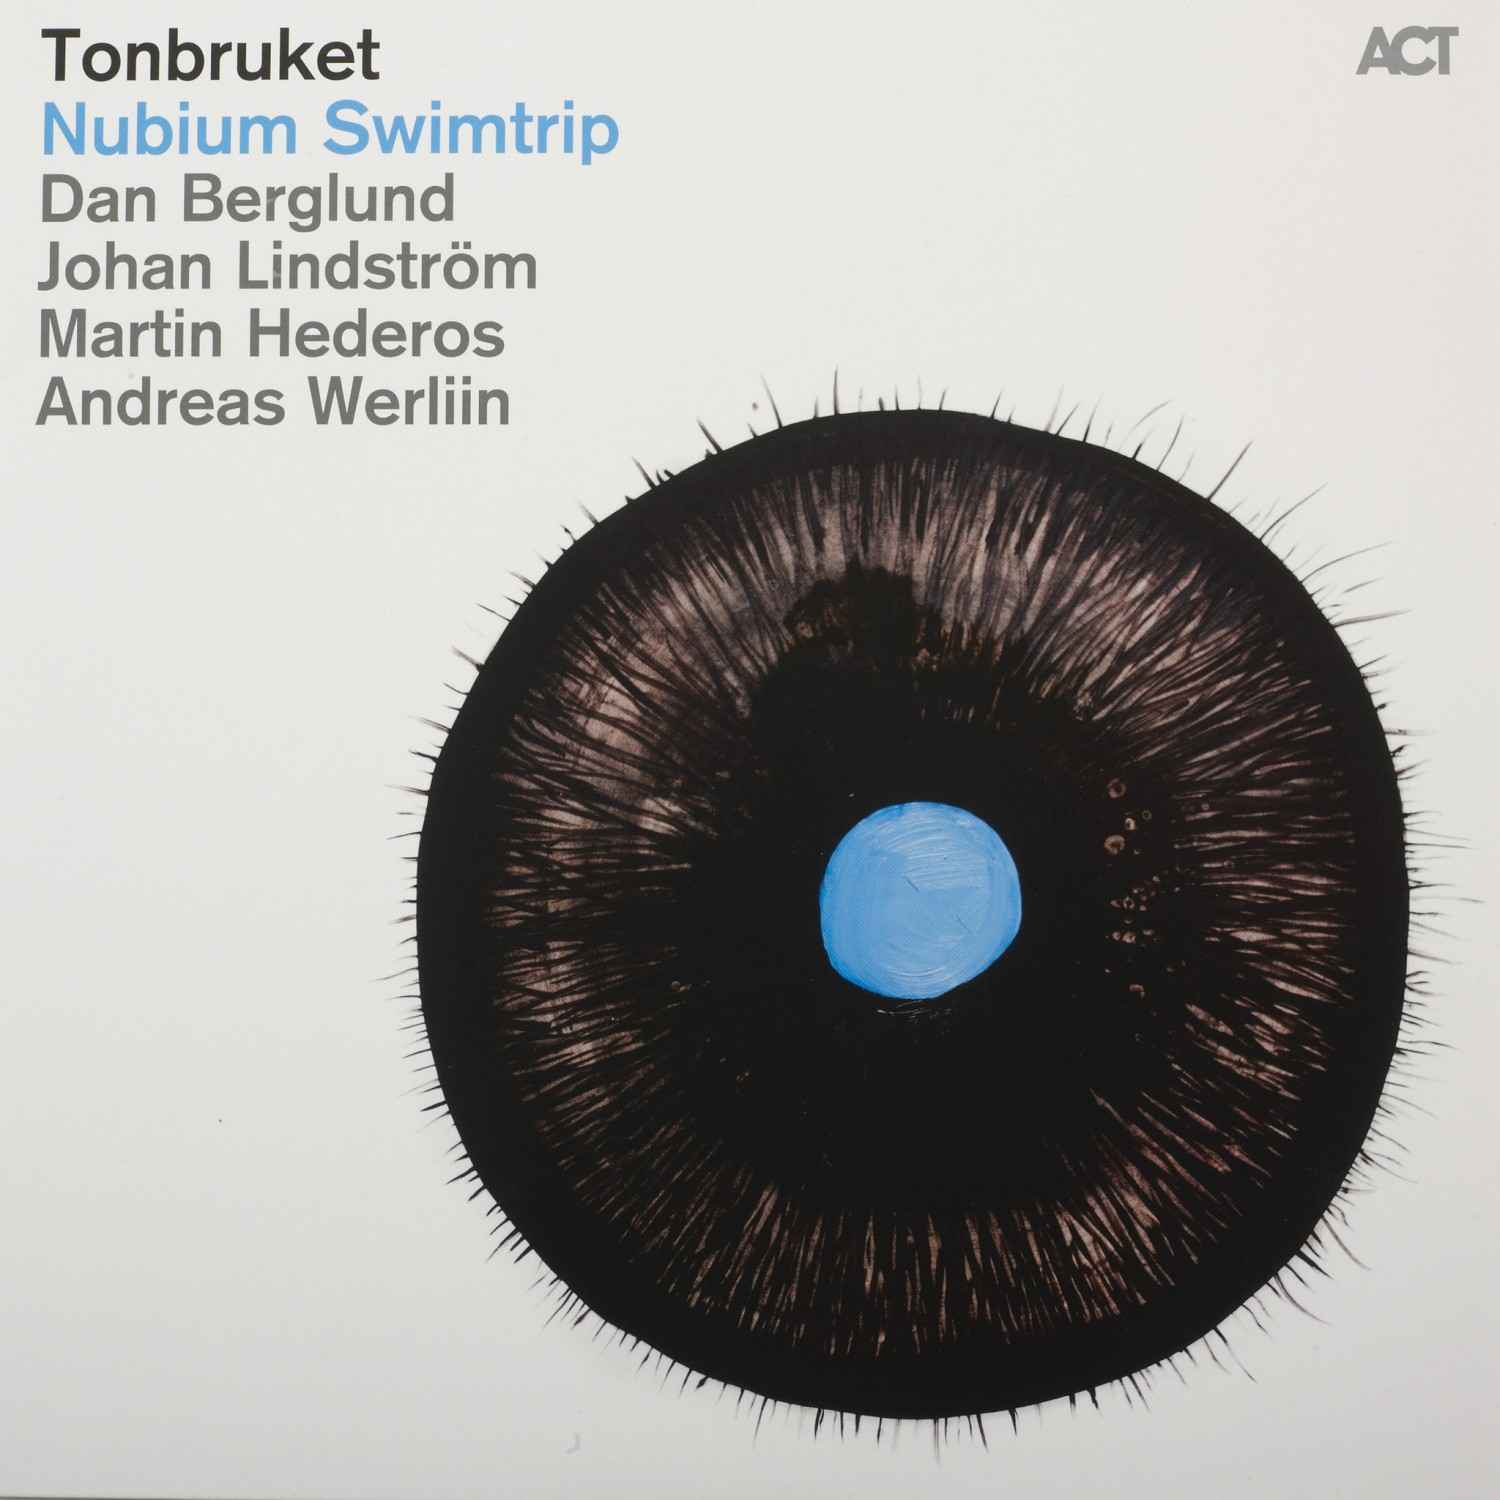 Schallplatte Tonbruket – Nubium Swimtrip · Nils Landgren – Eternal Beauty · Michael Wollny Trio – Weltentraum (ACT) im Test, Bild 1